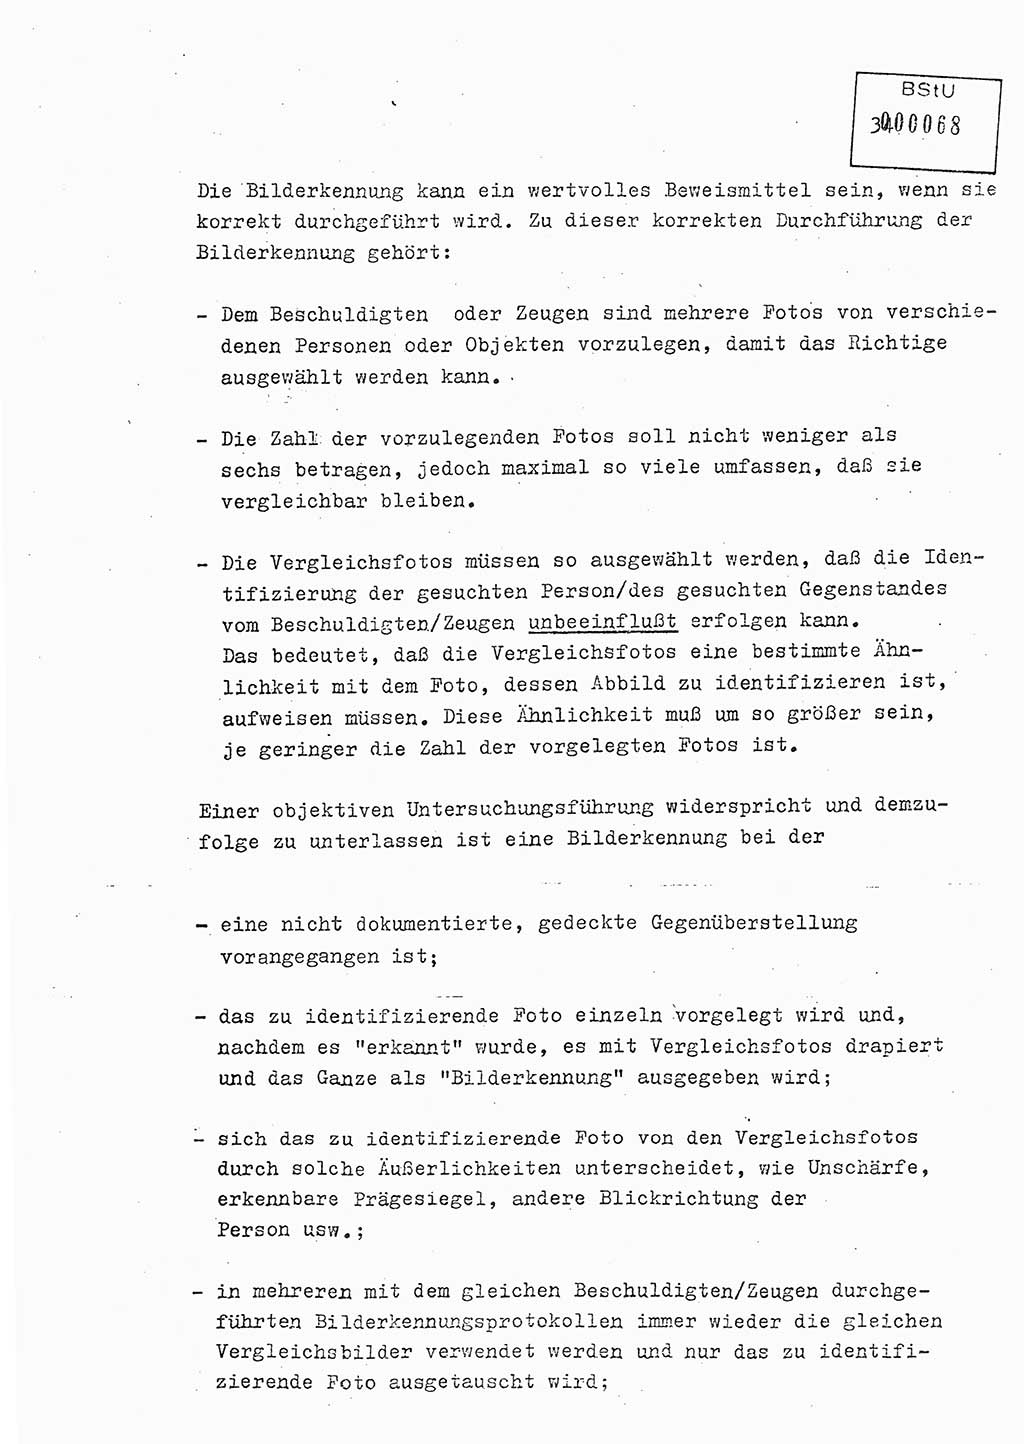 Lektion Ministerium für Staatssicherheit (MfS) [Deutsche Demokratische Republik (DDR)], Hauptabteilung (HA) Ⅸ, Berlin 1979, Seite 34 (Lekt. Bew.-Fü. EV MfS DDR HA Ⅸ 1979, S. 34)